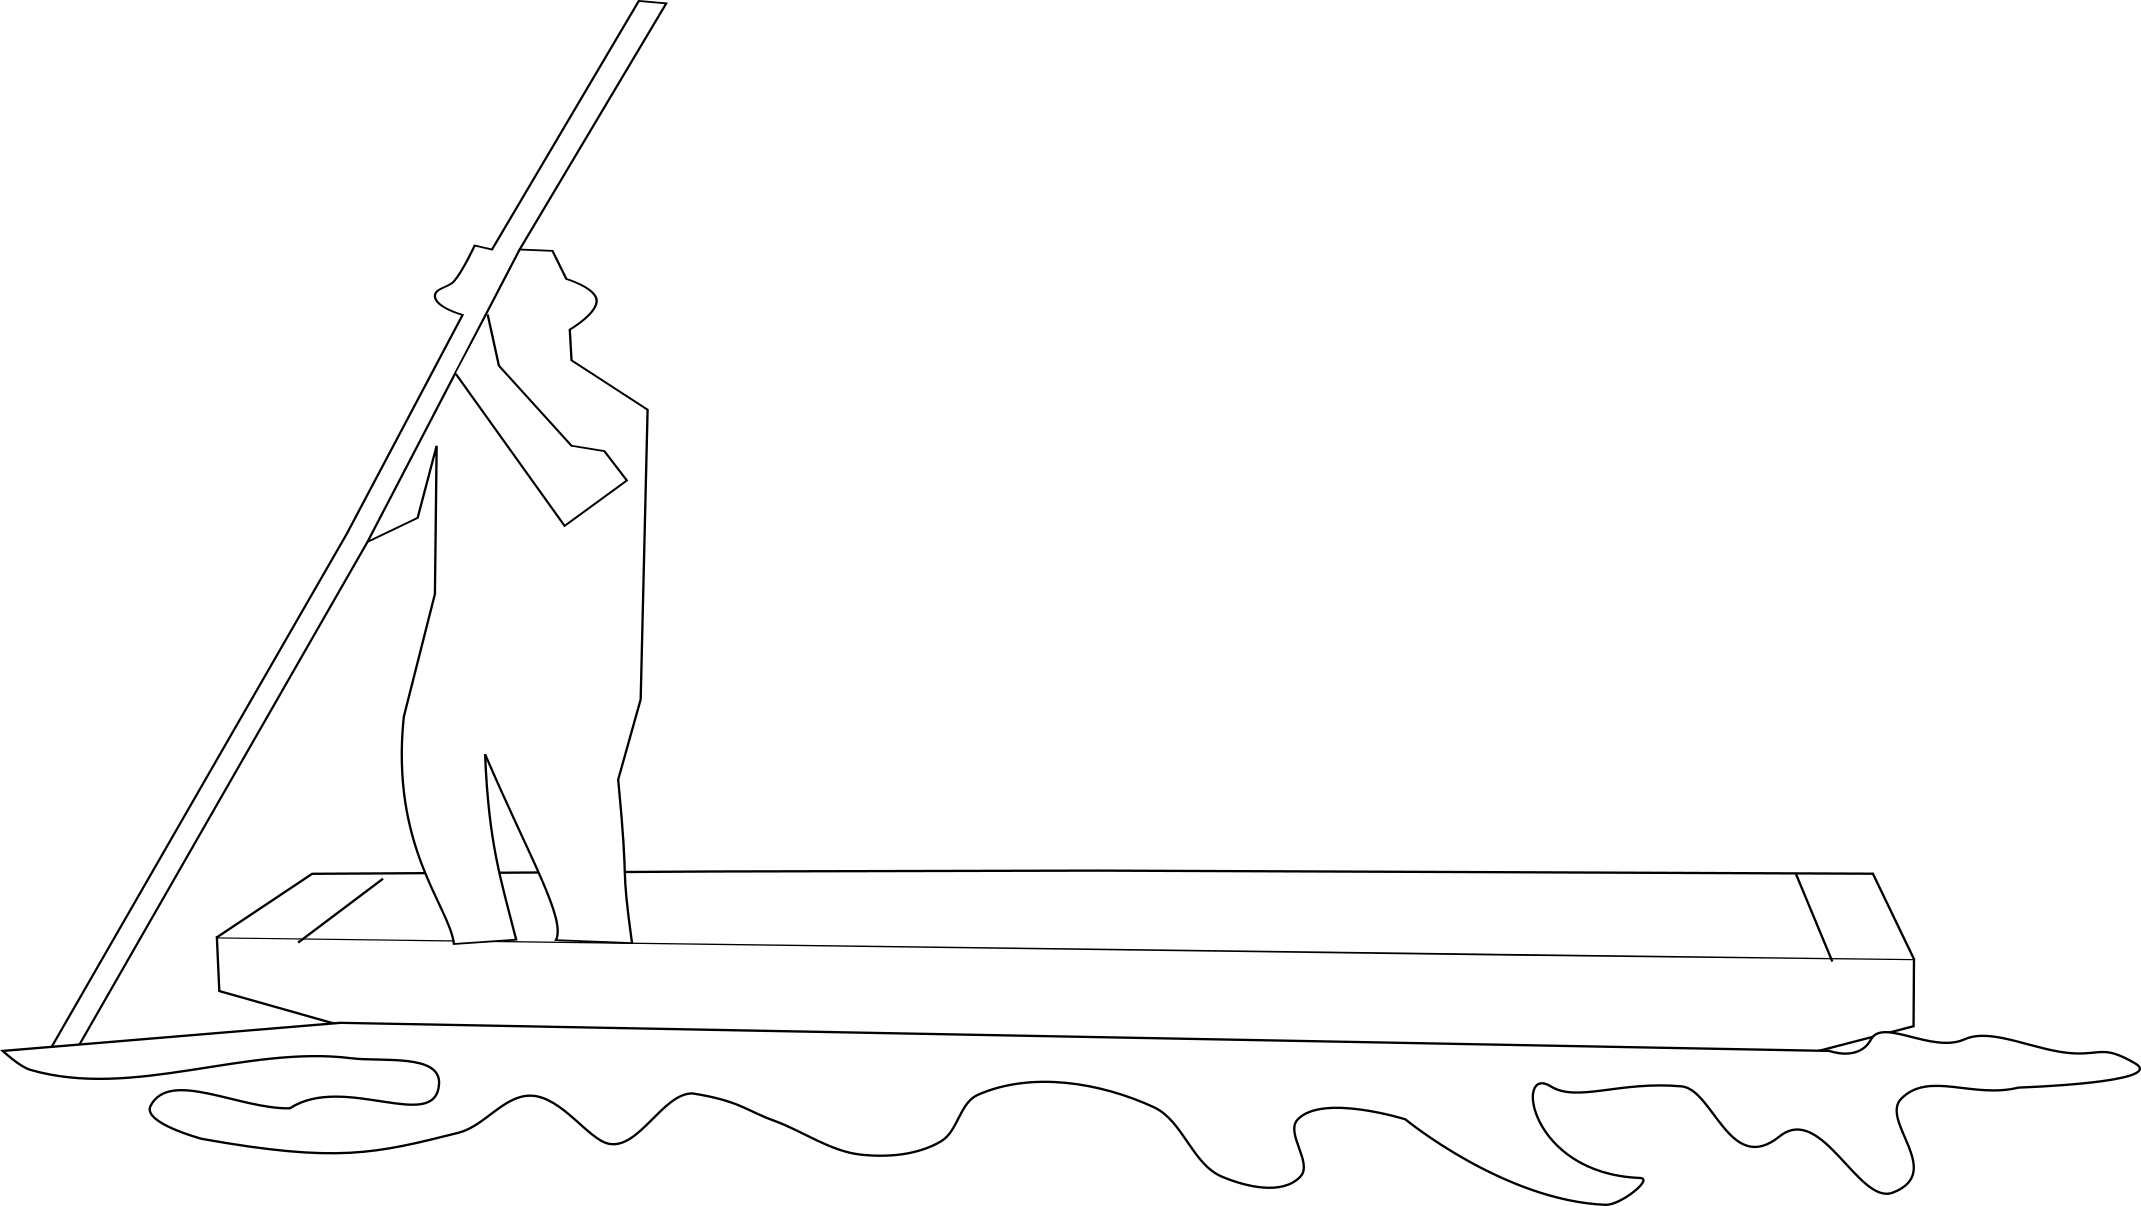 Maraicher sur une barque naviguant à l'aide de sa bourde